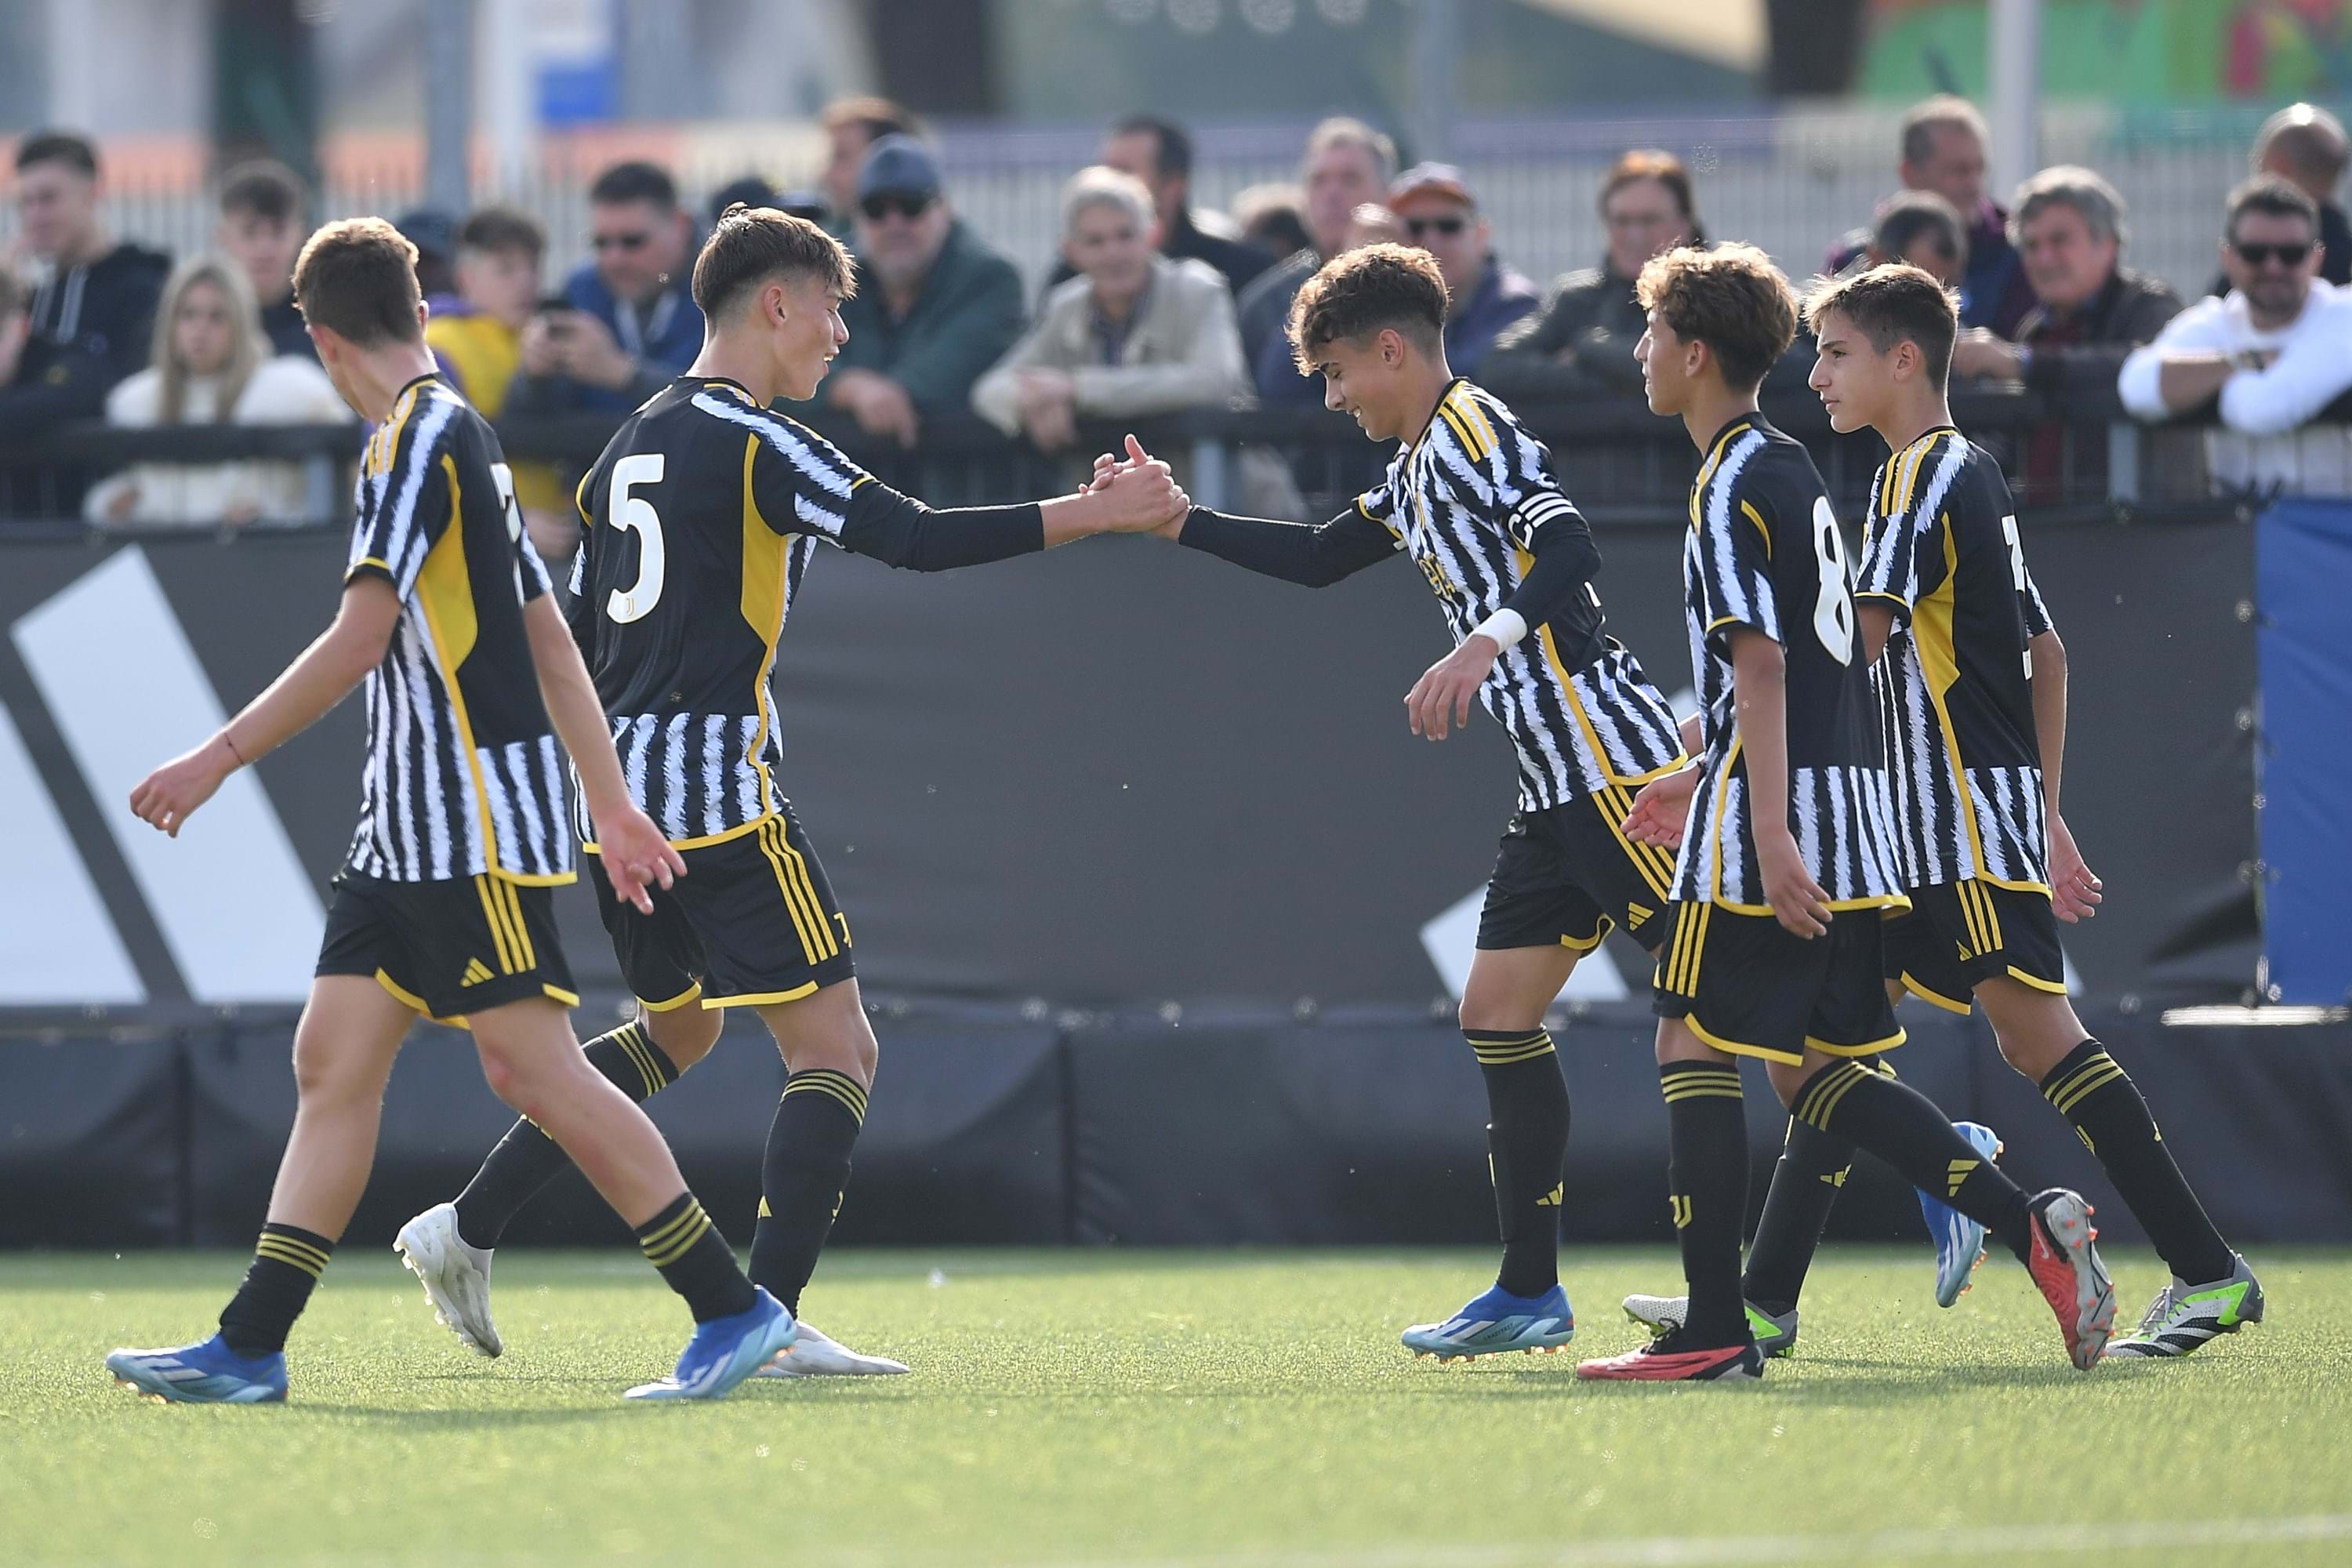 Under 15 Serie A e B, la Juventus ospita l'Atalanta nell'andata degli ottavi di finale. I tecnici: "Inizia una nuova stagione"